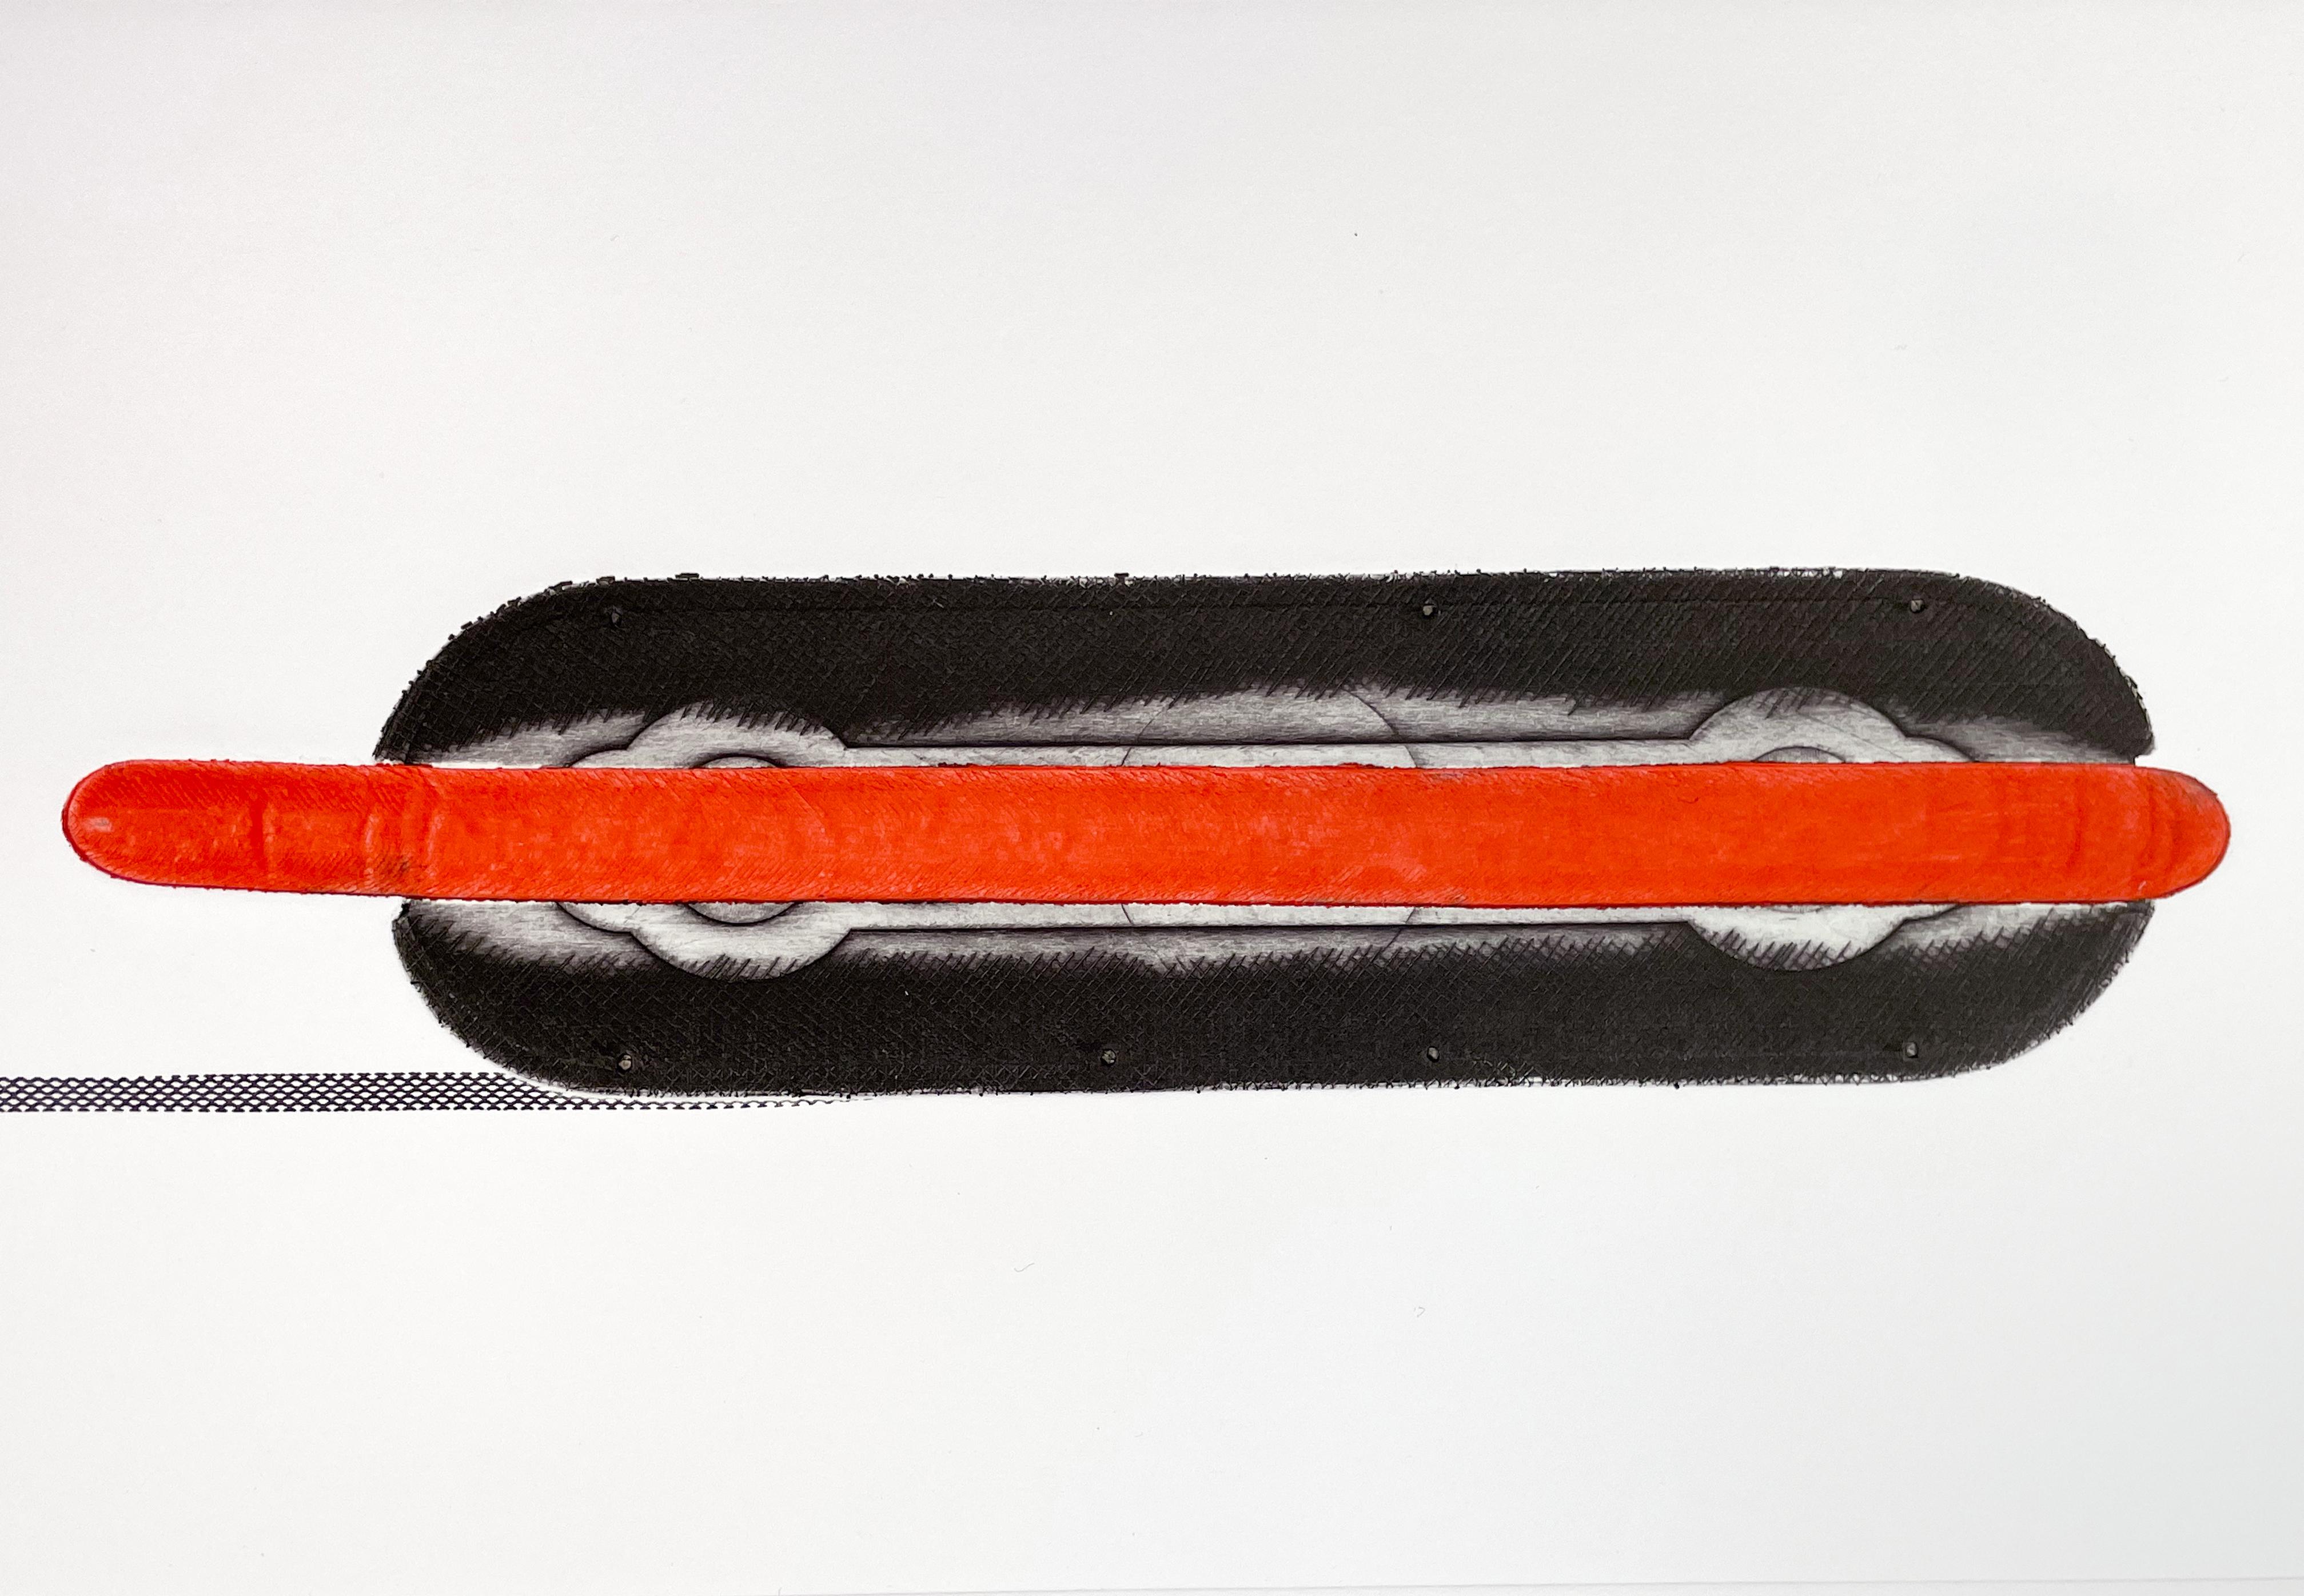 Hot Dog, Colin Self. Gravure pop art britannique de la guerre froide américaine rouge vif et noire, États-Unis